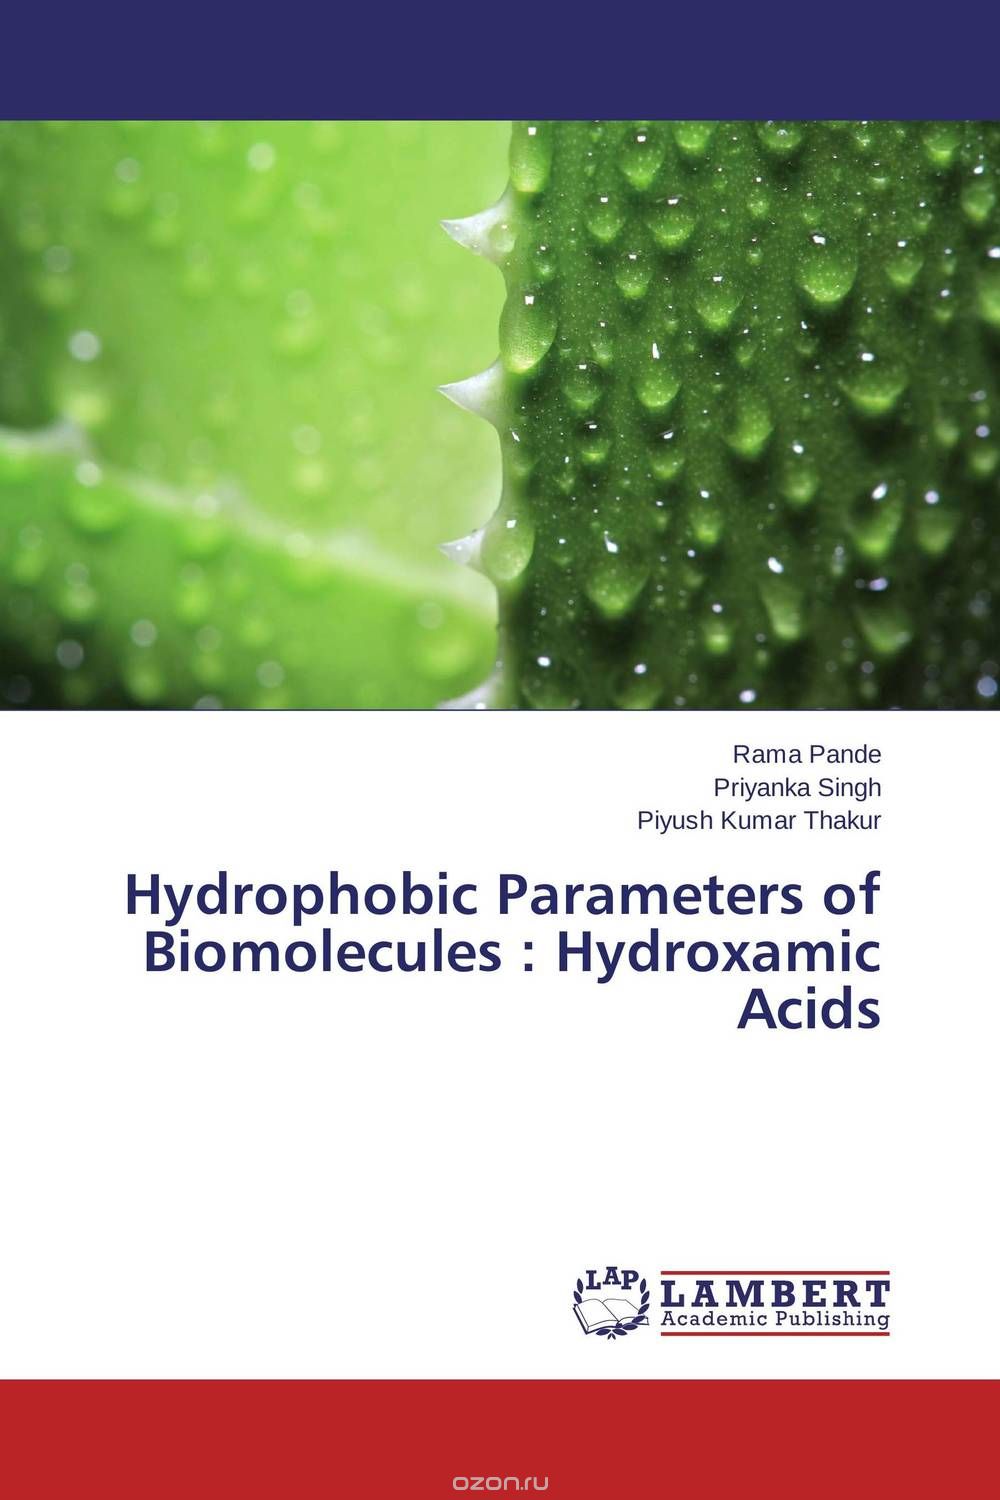 Скачать книгу "Hydrophobic Parameters of Biomolecules : Hydroxamic Acids"